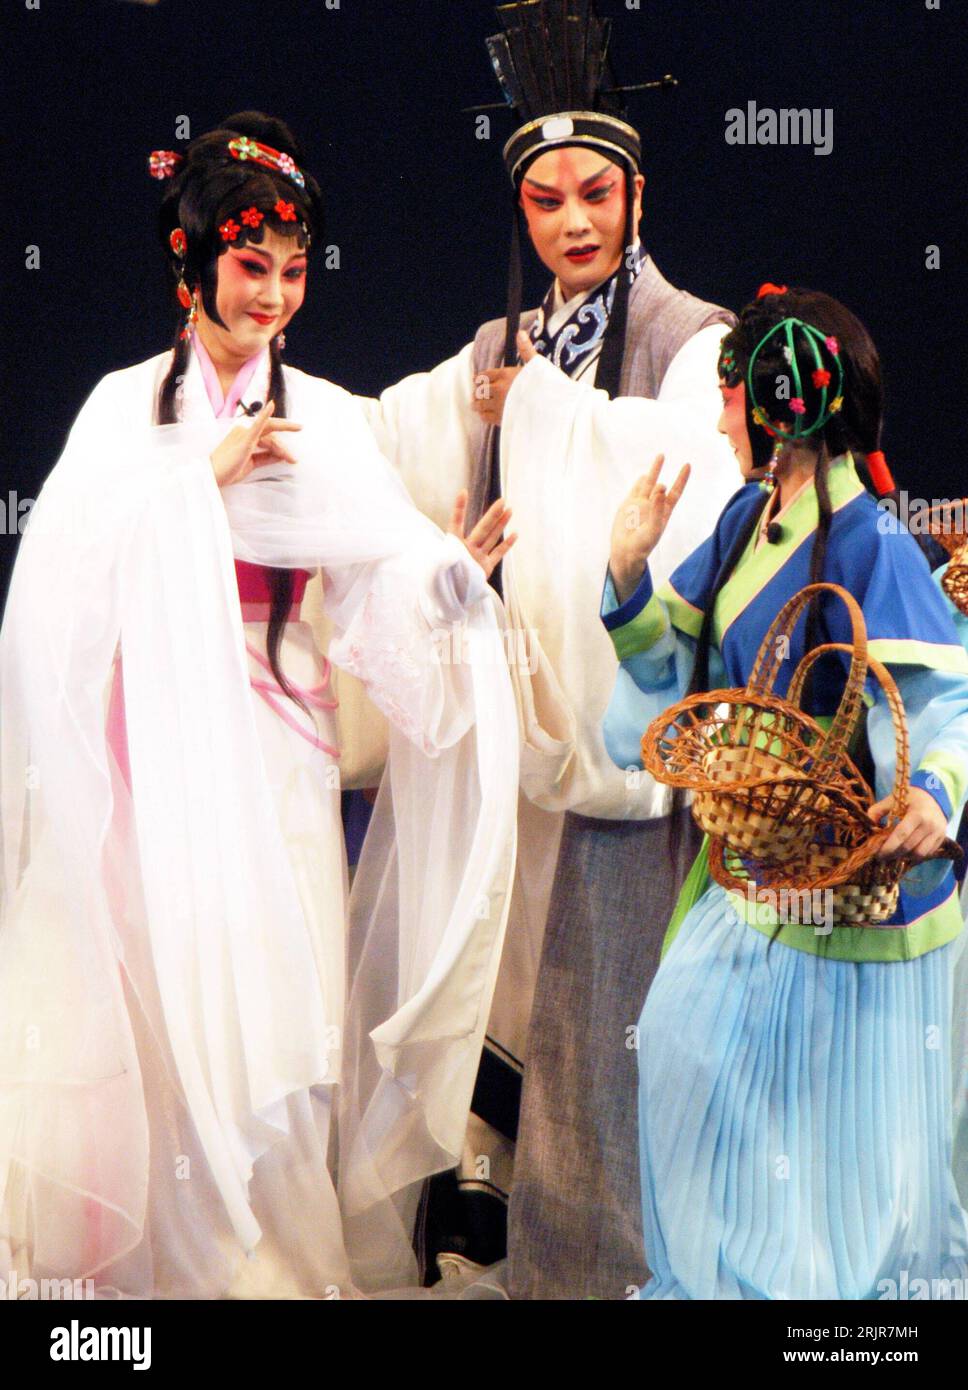 Bildnummer: 51322694  Datum: 05.07.2006  Copyright: imago/Xinhua Schauspieler während einer Aufführung einer Kunqu - Oper - anlässlich der - 3. China Kunqu Kunst Festivals - in Kunshan Stadt - PUBLICATIONxNOTxINxCHN, Personen; 2006, Kunshan Stadt, Jiangsu, Oper, Opern, Tanz, Tänze, Kostüm, Kostüme, kostümiert, kostümierte, kostümierter, Musik, Klassik, Tradition, Frau, Frauen, Kunquoper, Kun Kunoper, Mann, Männer,; , hoch, Kbdig, Gruppenbild, Theater, Kunst, China,  , Stock Photo